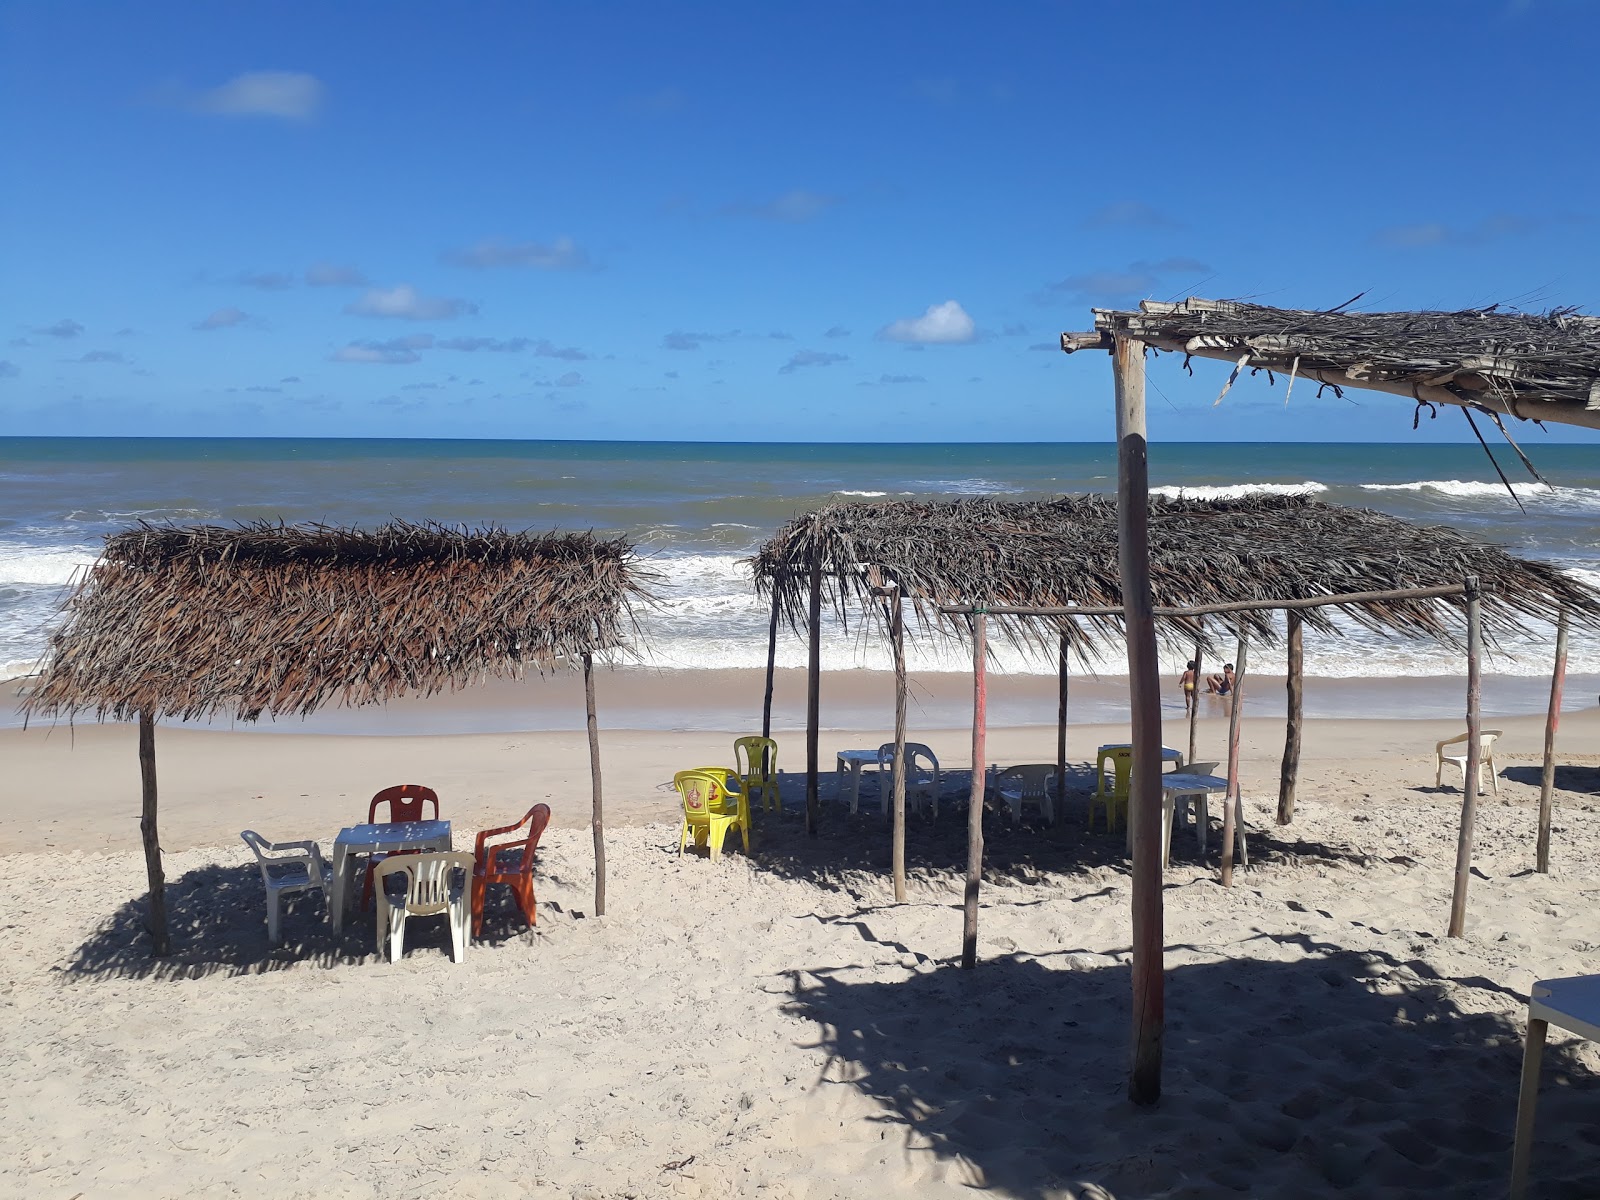 Praia de Siribinha的照片 带有碧绿色纯水表面